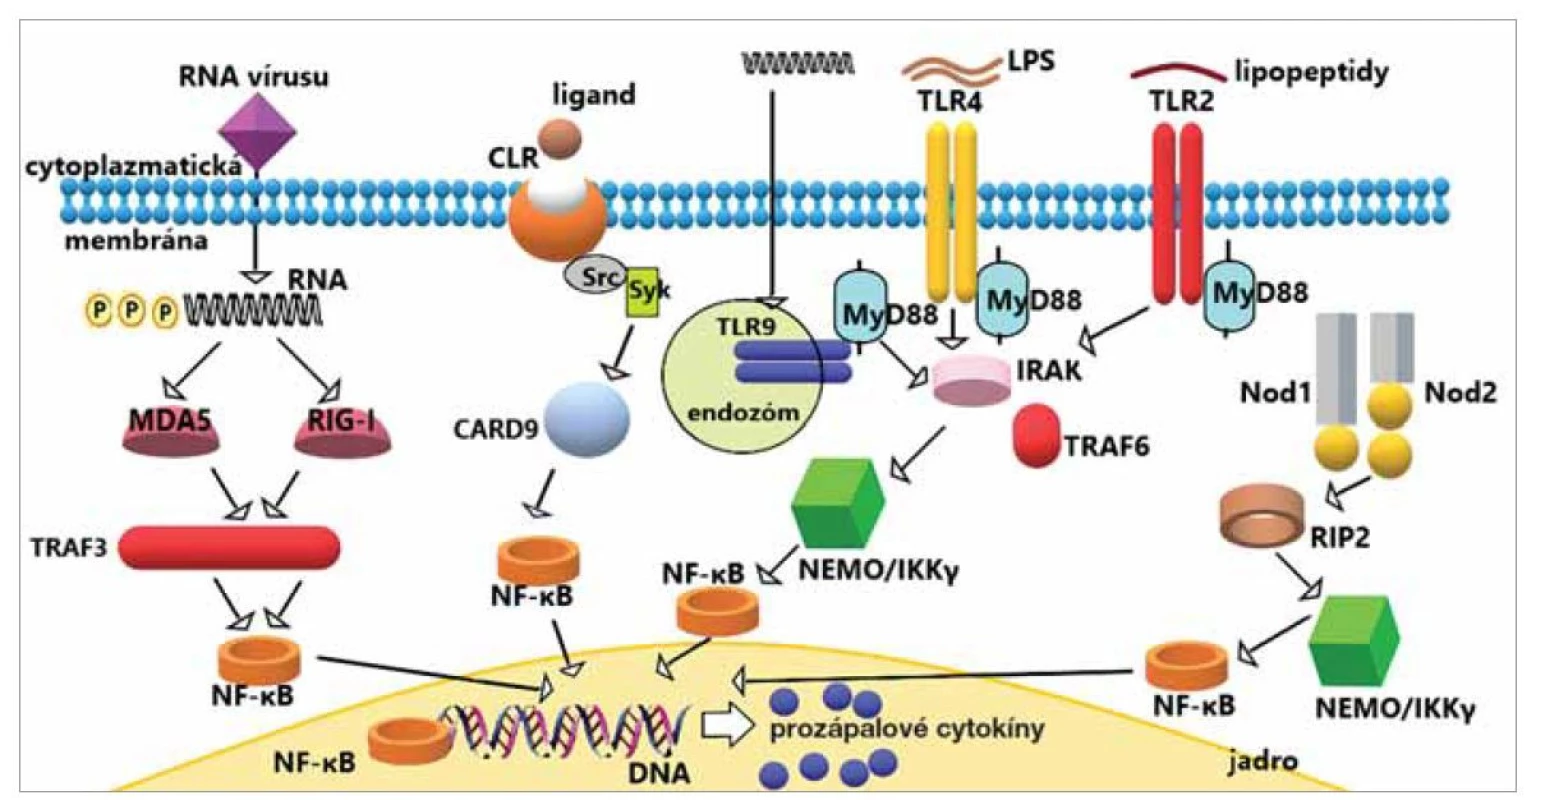 Signalizačná dráha TLR, NLR, CLR a RLR receptorov.<br>
TLR, NLR, CLR a RLR signalizácia spôsobuje aktiváciu NF-κB (nukleárny faktor κB), čo vedie k produkcii prozápalových cytokínov
a stimulácii imunitných odpovedí. Základná (neúplná) schéma signalizácie jednotlivých receptorov.<br>
Fig. 3. Signaling pathway via TLR, NLR, CLR and RLR receptors.<br>
TLR, NLR, CLR and RLR signaling cause activation of NF-κB (nuclear factor κB), leading to the production of pro-inflammatory
cytokines and stimulation of immune responses. Basic (incomplete) signaling scheme of individual receptors.